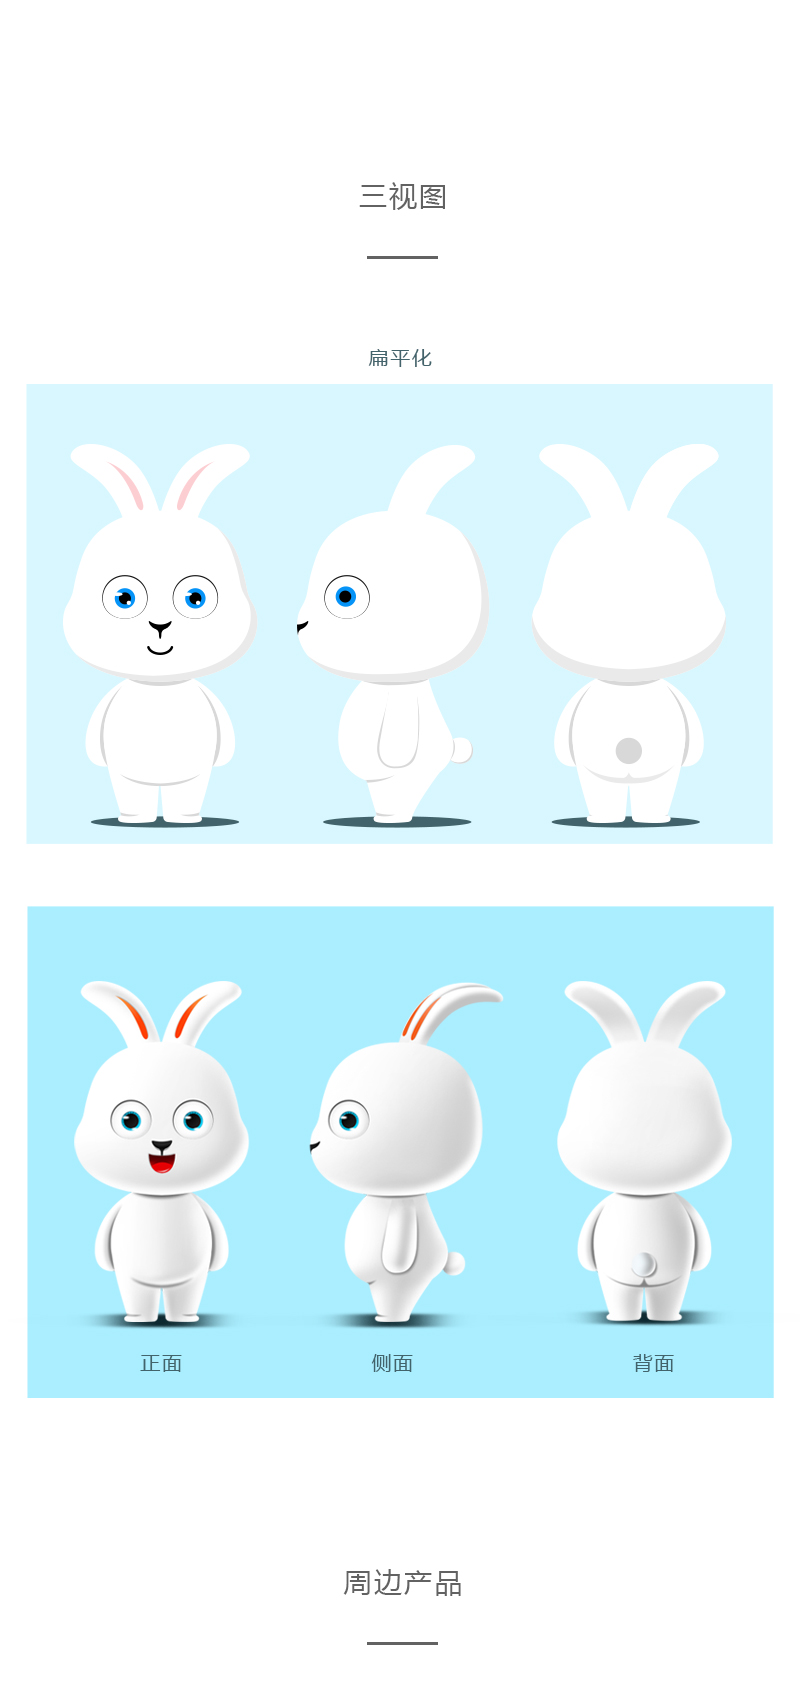 卡通形象设计练习一只萌萌小兔子有可爱的名字whimsy兔